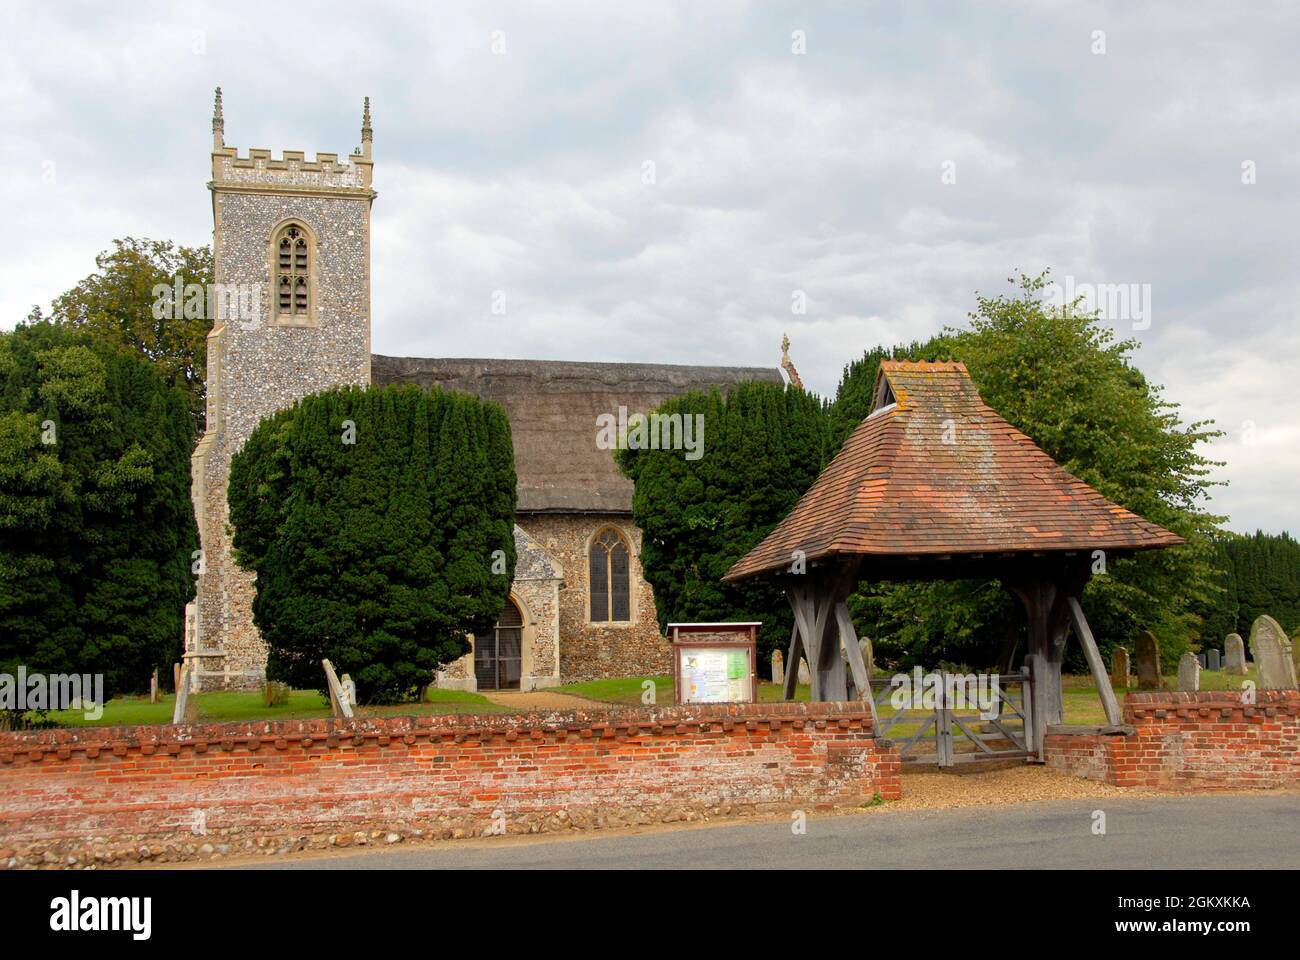 Die Kirche von St. Fabian und St. Sebastian, Woodbastwick, Norfolk, England mit Lyschentor am Eingang von der Straße Stockfoto